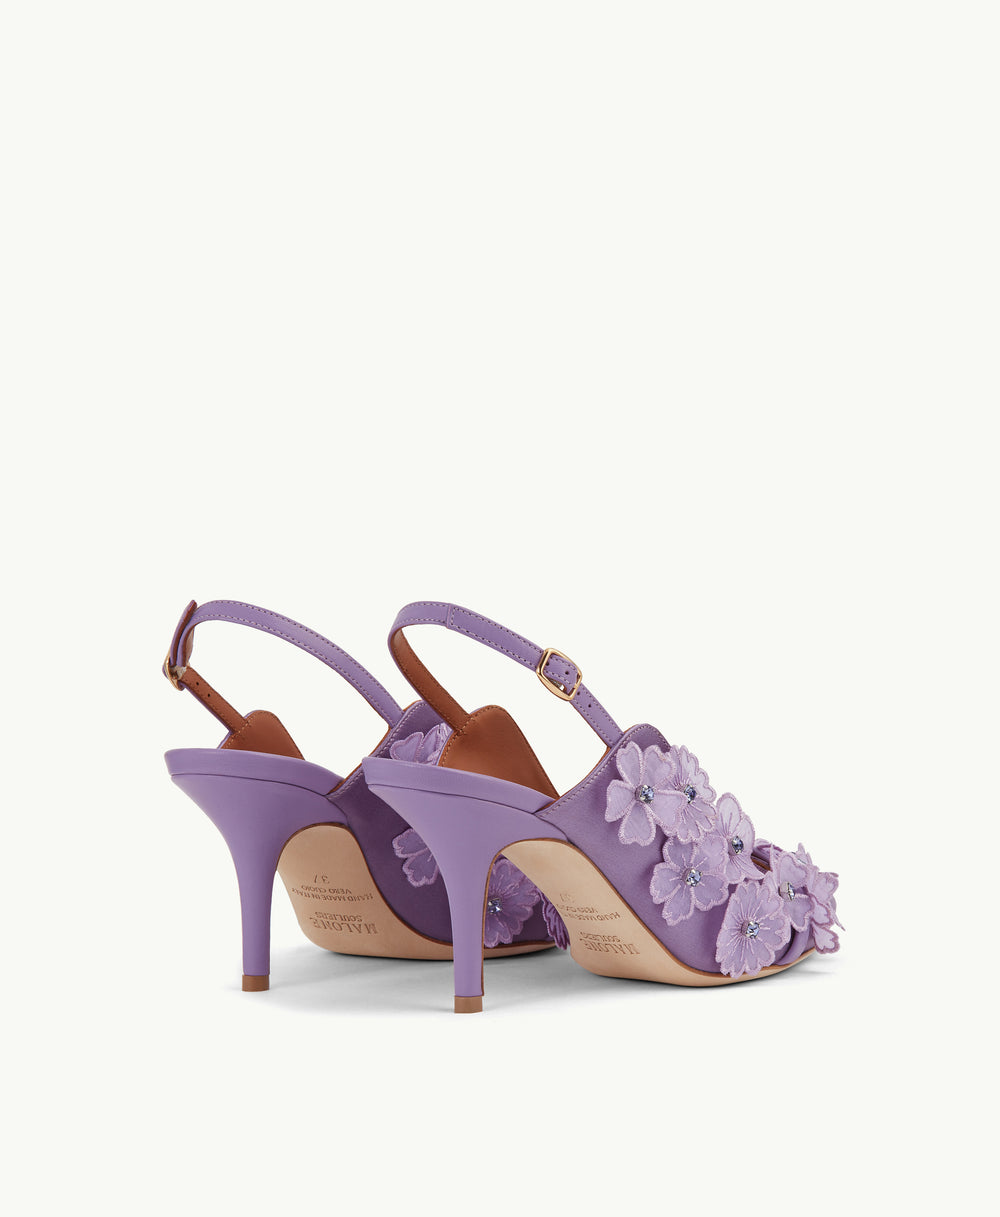 Women's Purple Embellished Satin Slingback Heel Malone Souliers